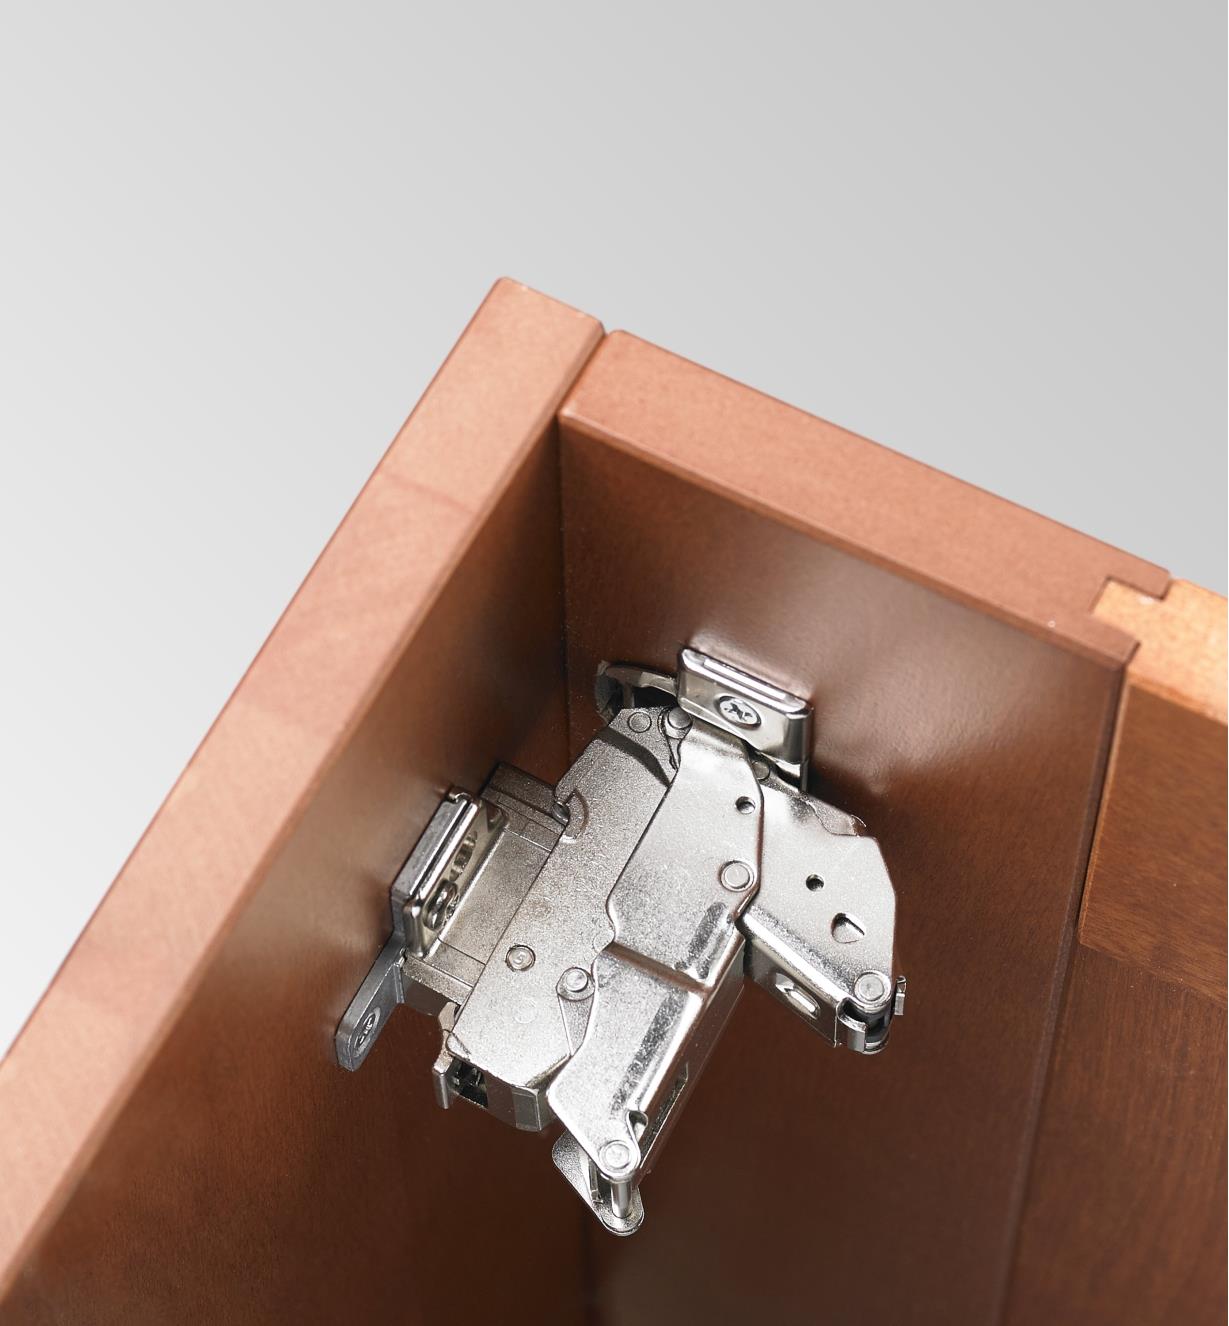 Charnière 155° Blum Clip Top avec amortisseur intégré dissimulée derrière une porte encastrée